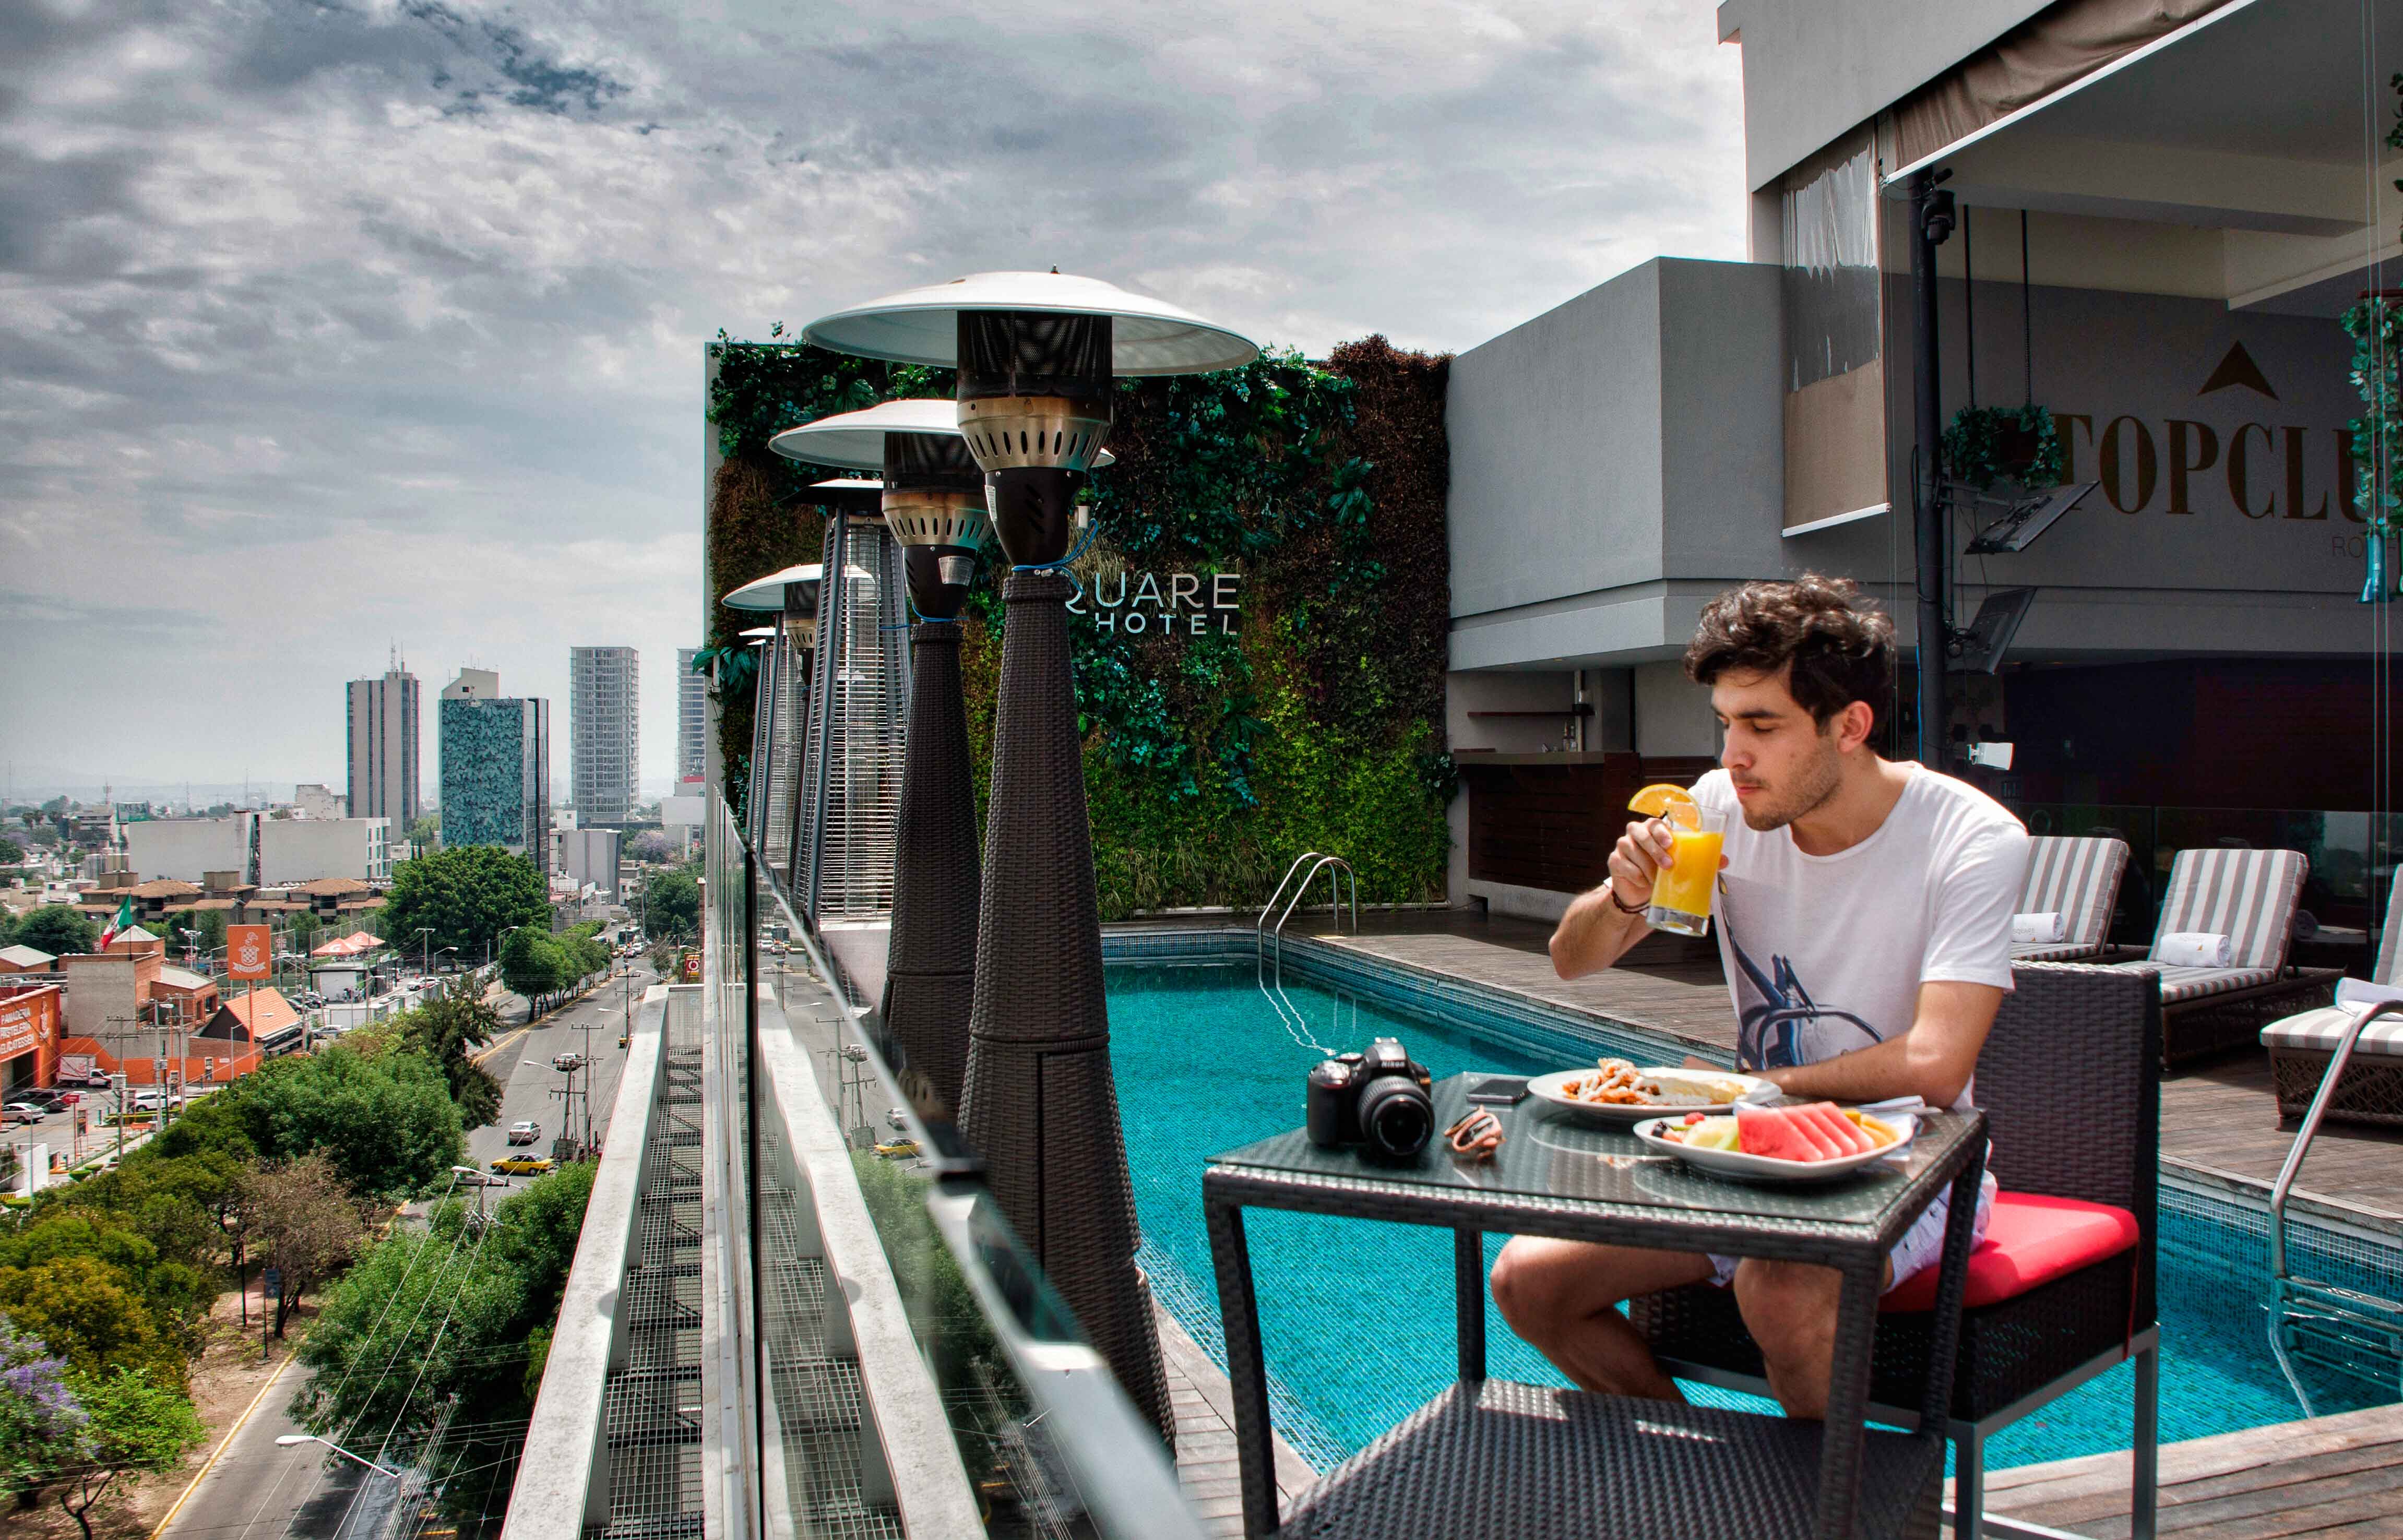 breakfast3-Square-Hotel-Luxury-Guadalajara-alex-jumper